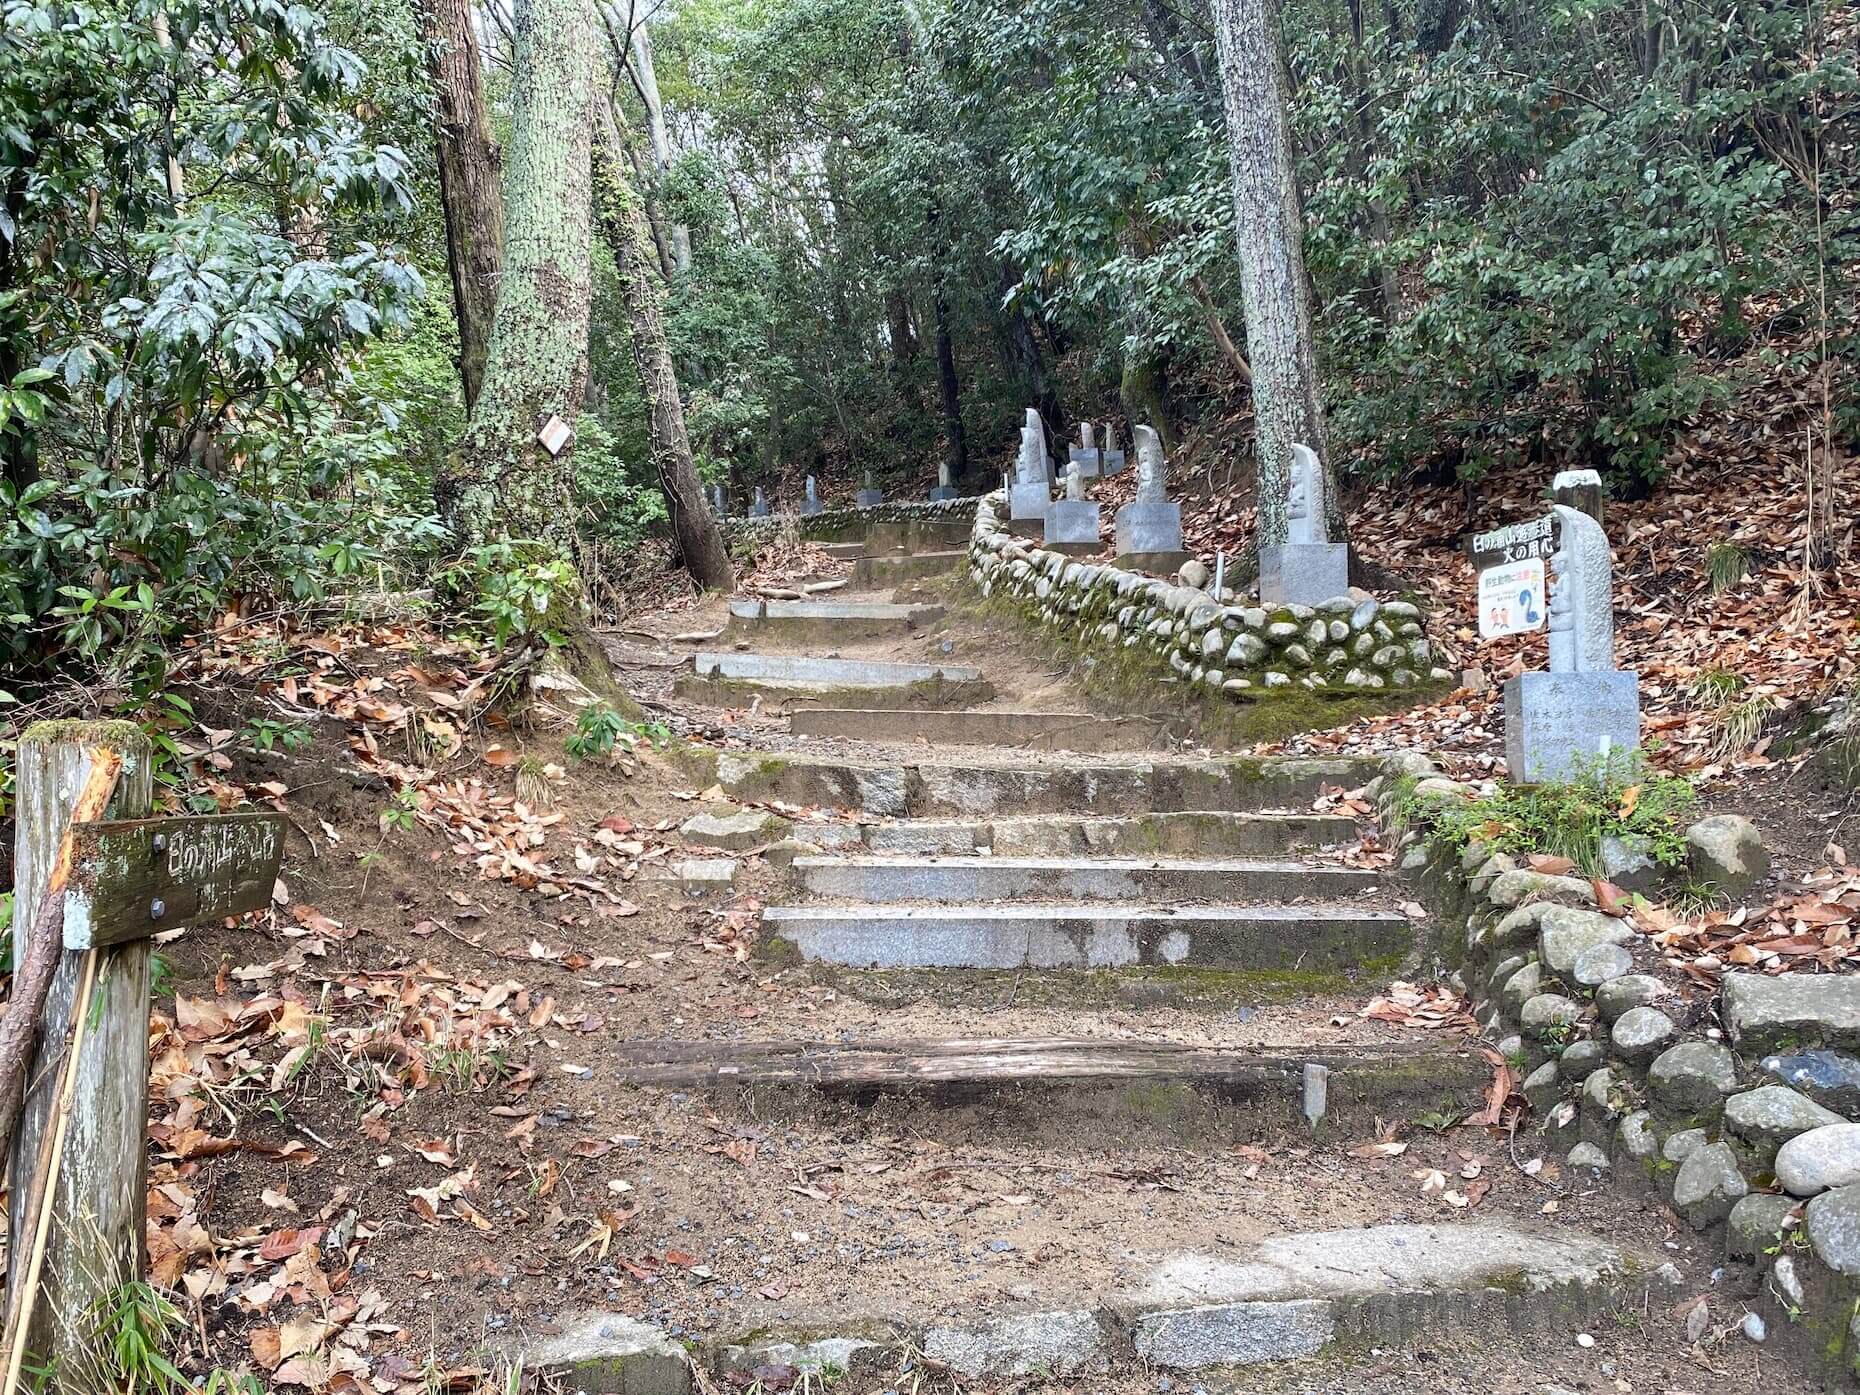 広島新四国八十八ヵ所霊場の寺院から勧請した石仏が並ぶ登山道